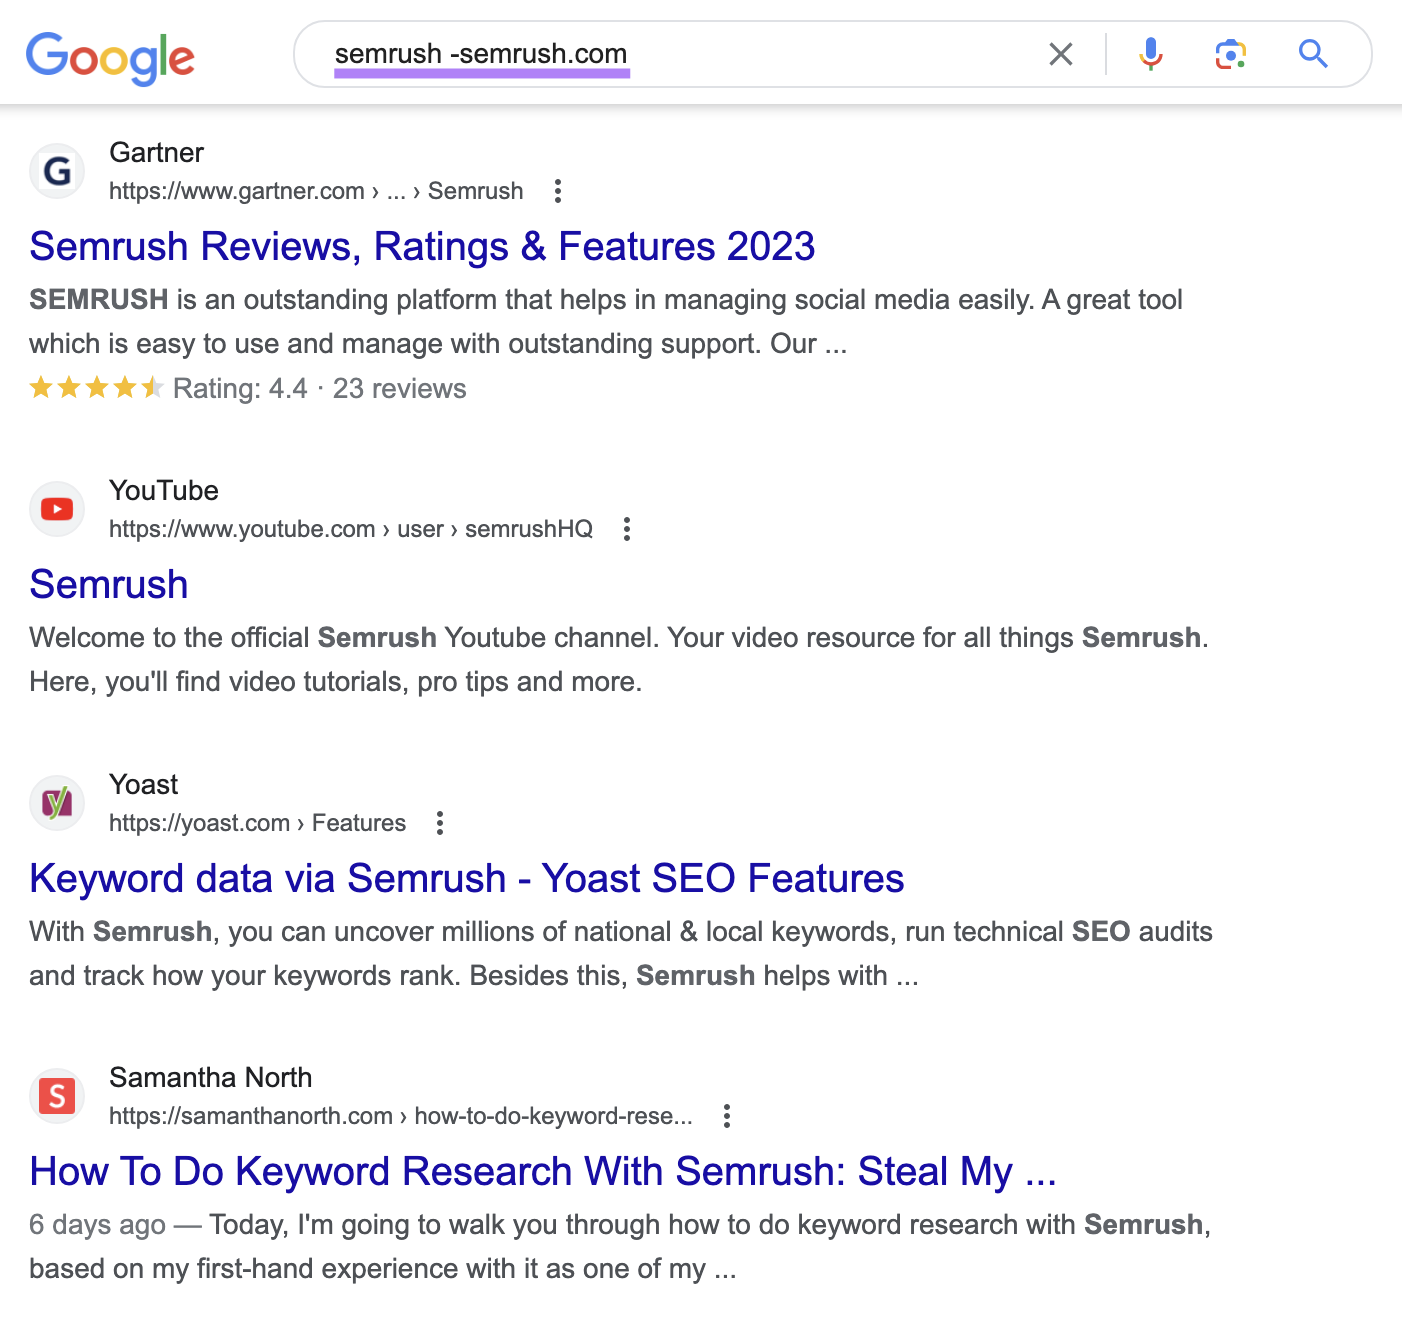 Google's SERP for “semrush -semrush.com” search